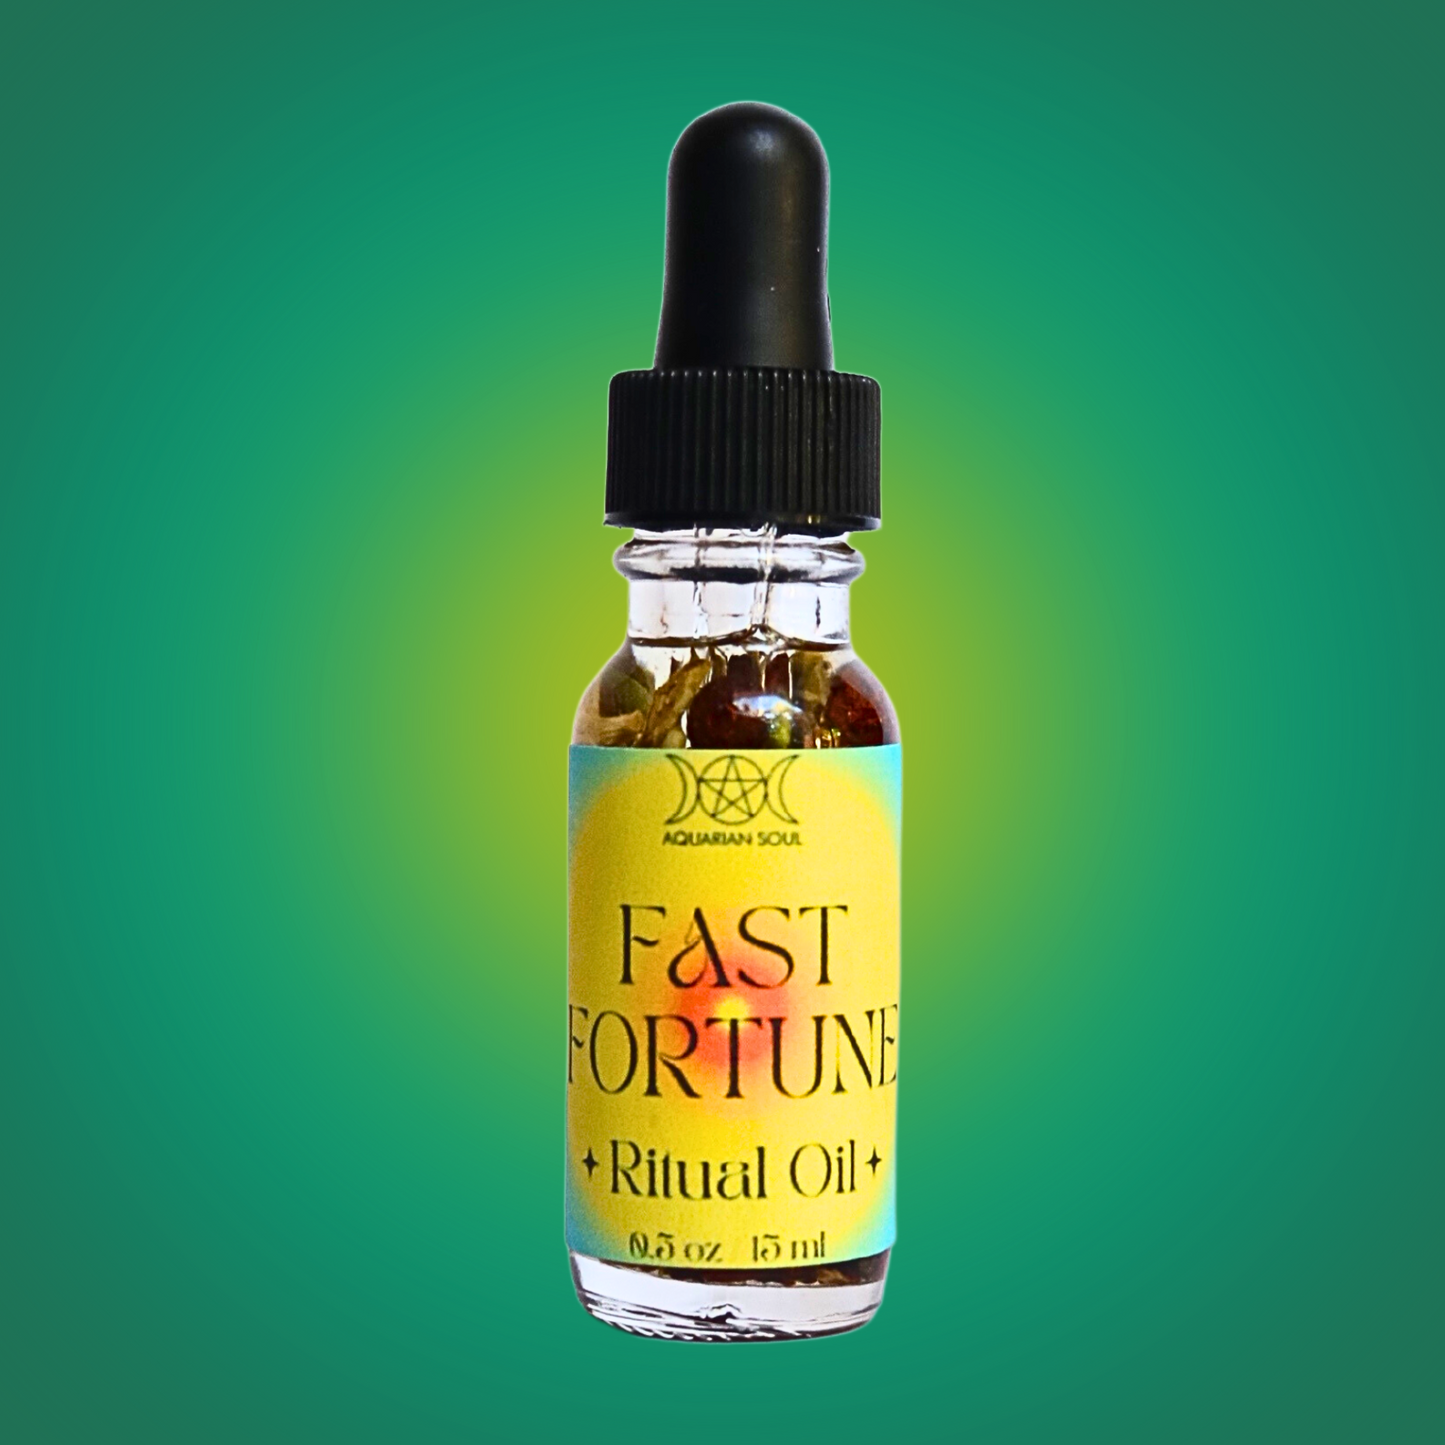 Fast Fortune Ritual Oil